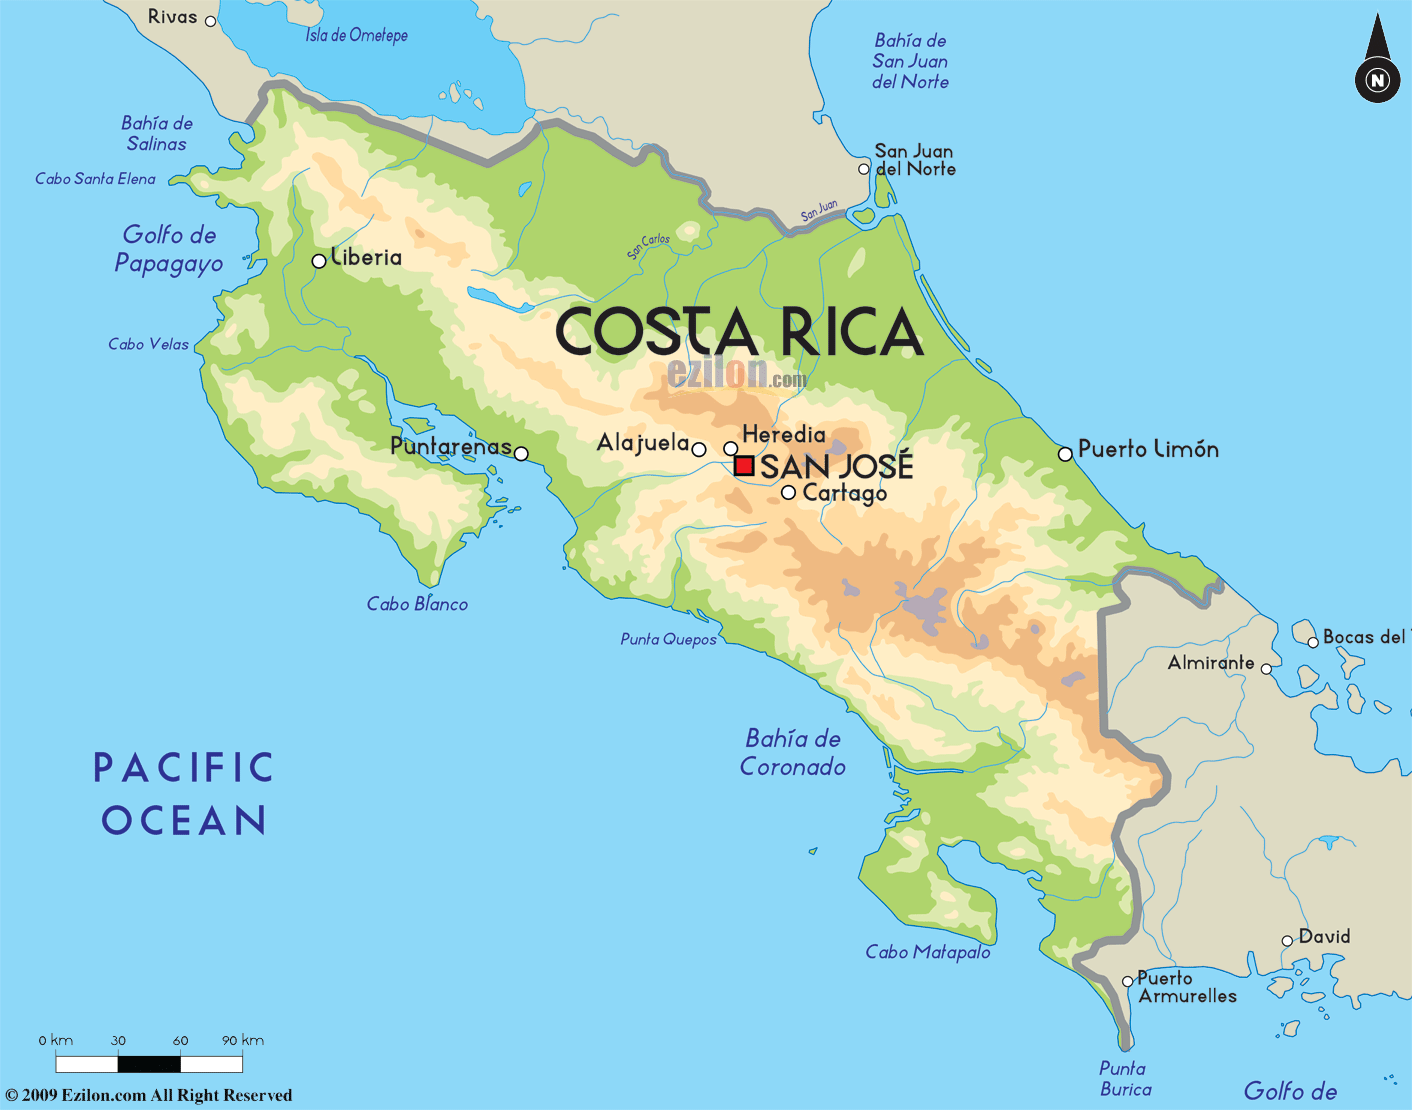 Costa Rica Mapa Geografico - SEONegativo.com